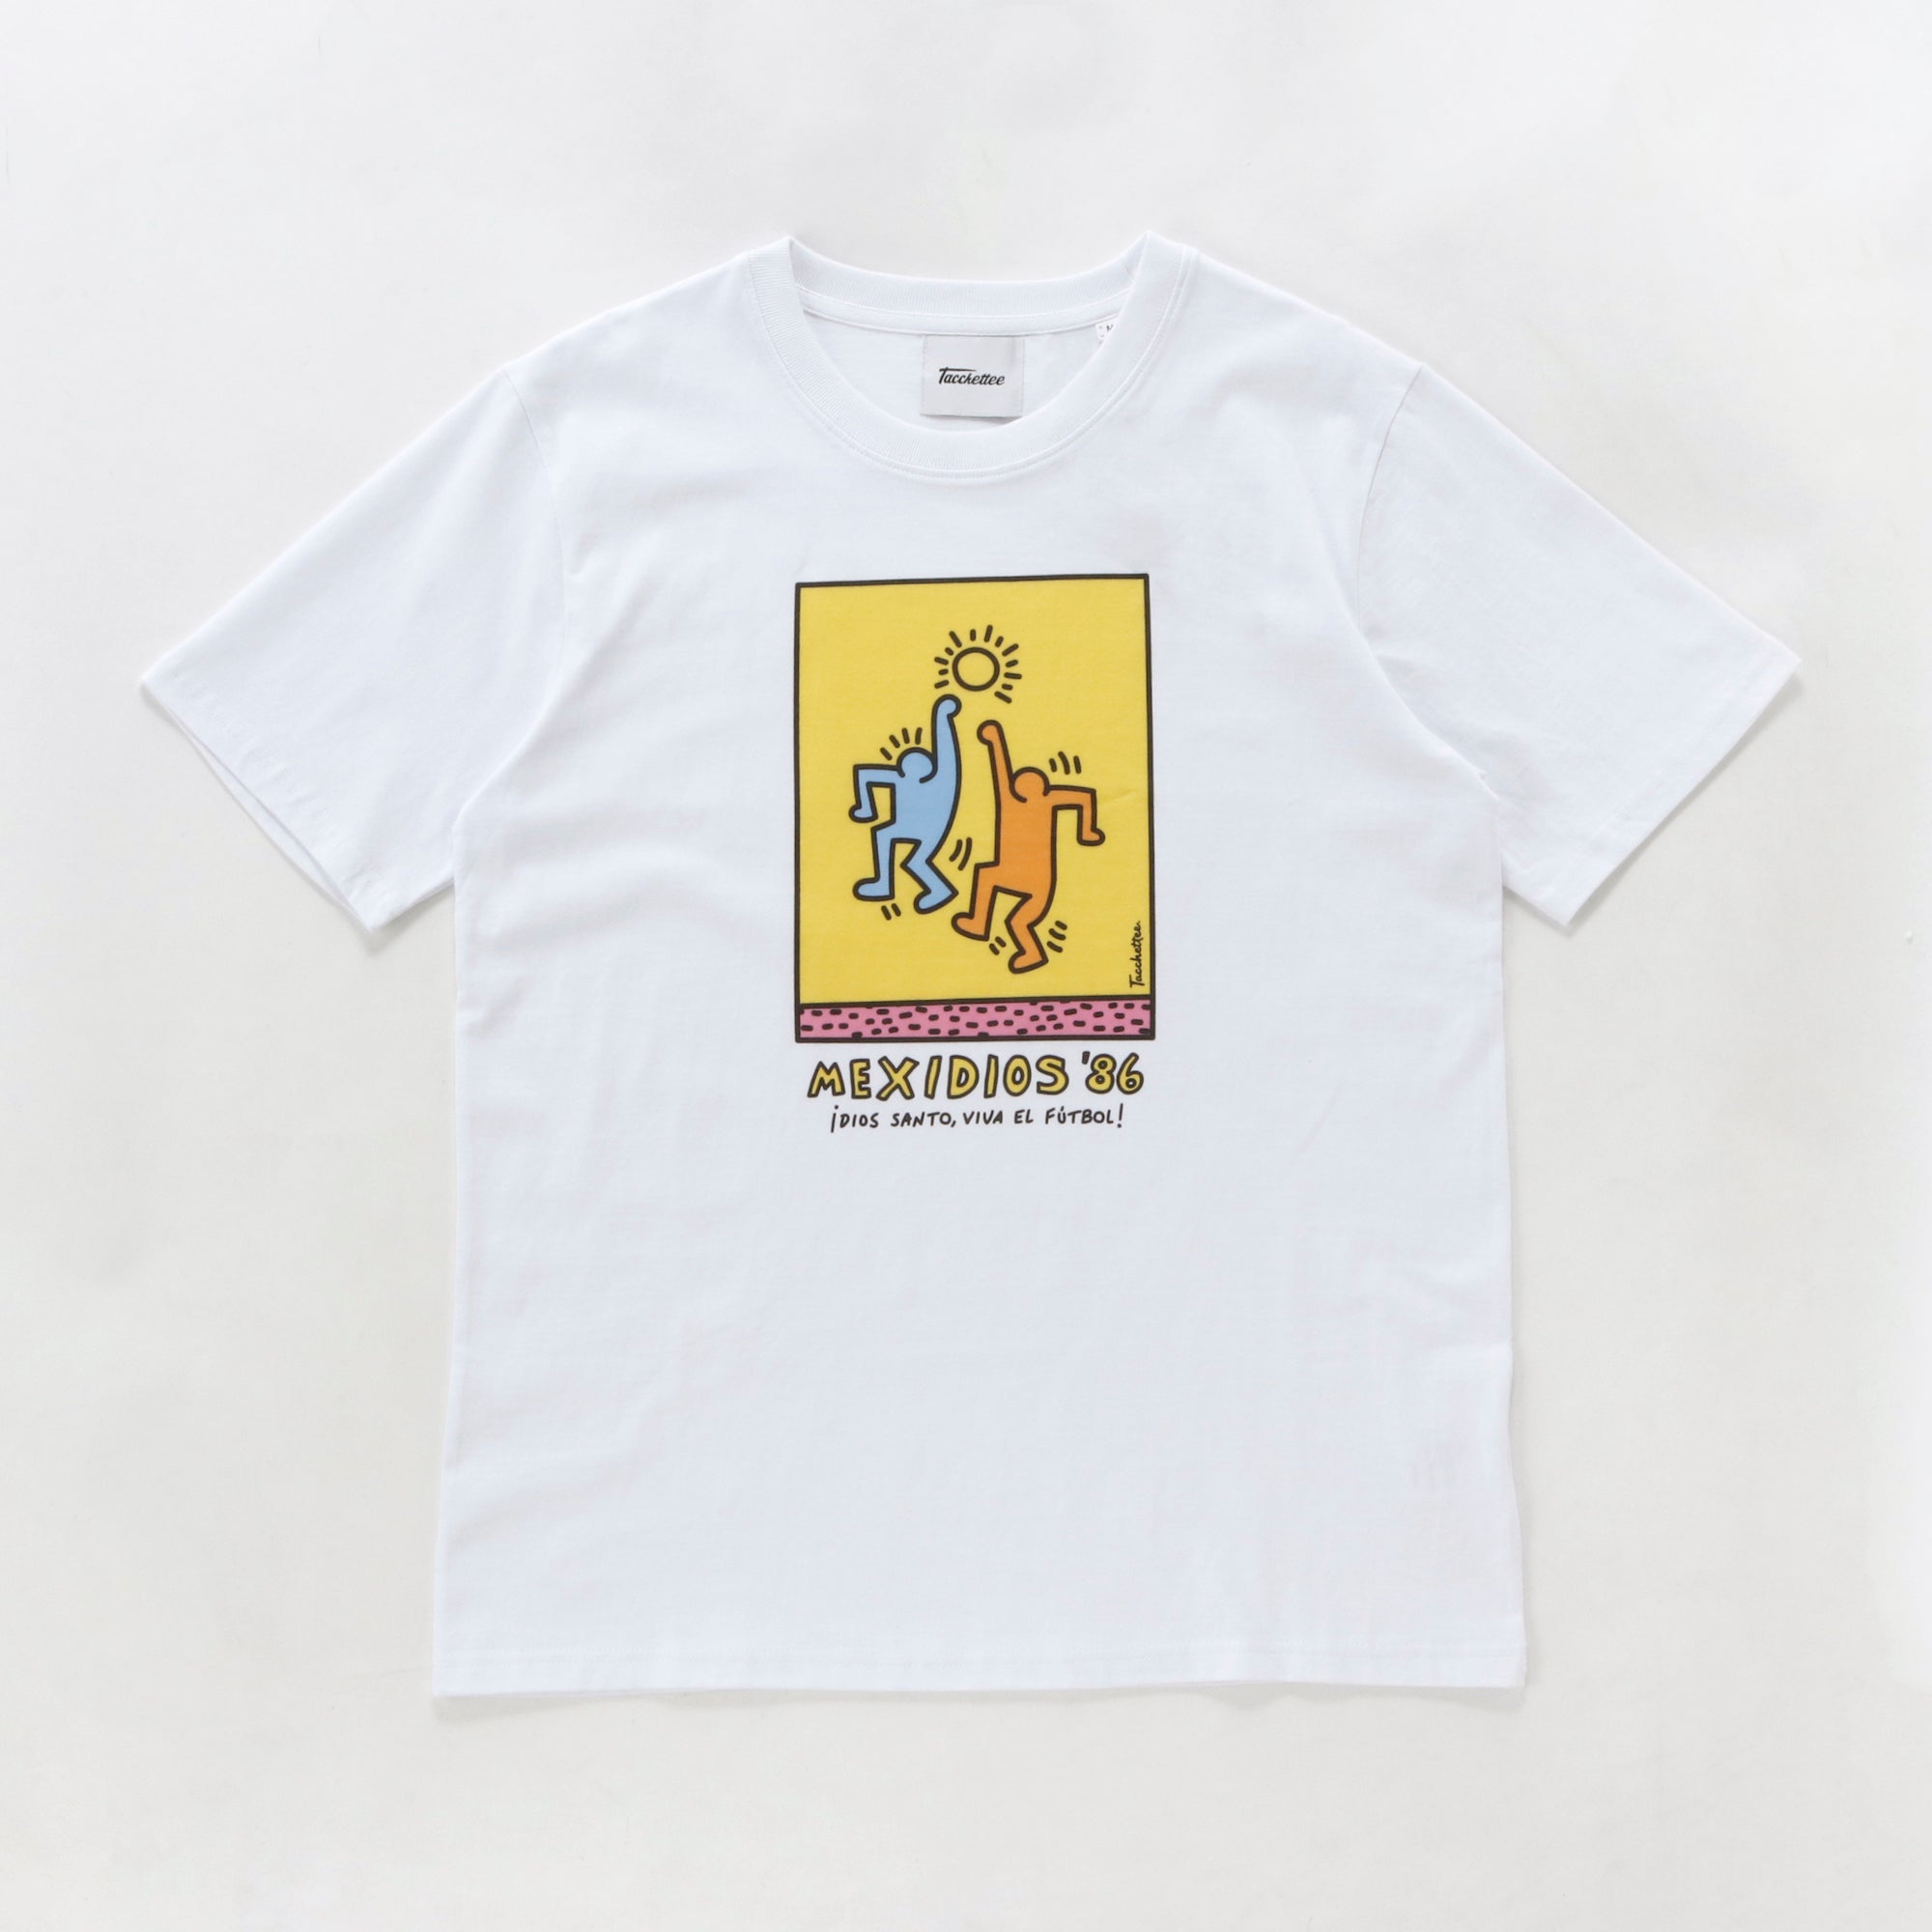 MEXIDIOS '86 T-shirt-WHITE